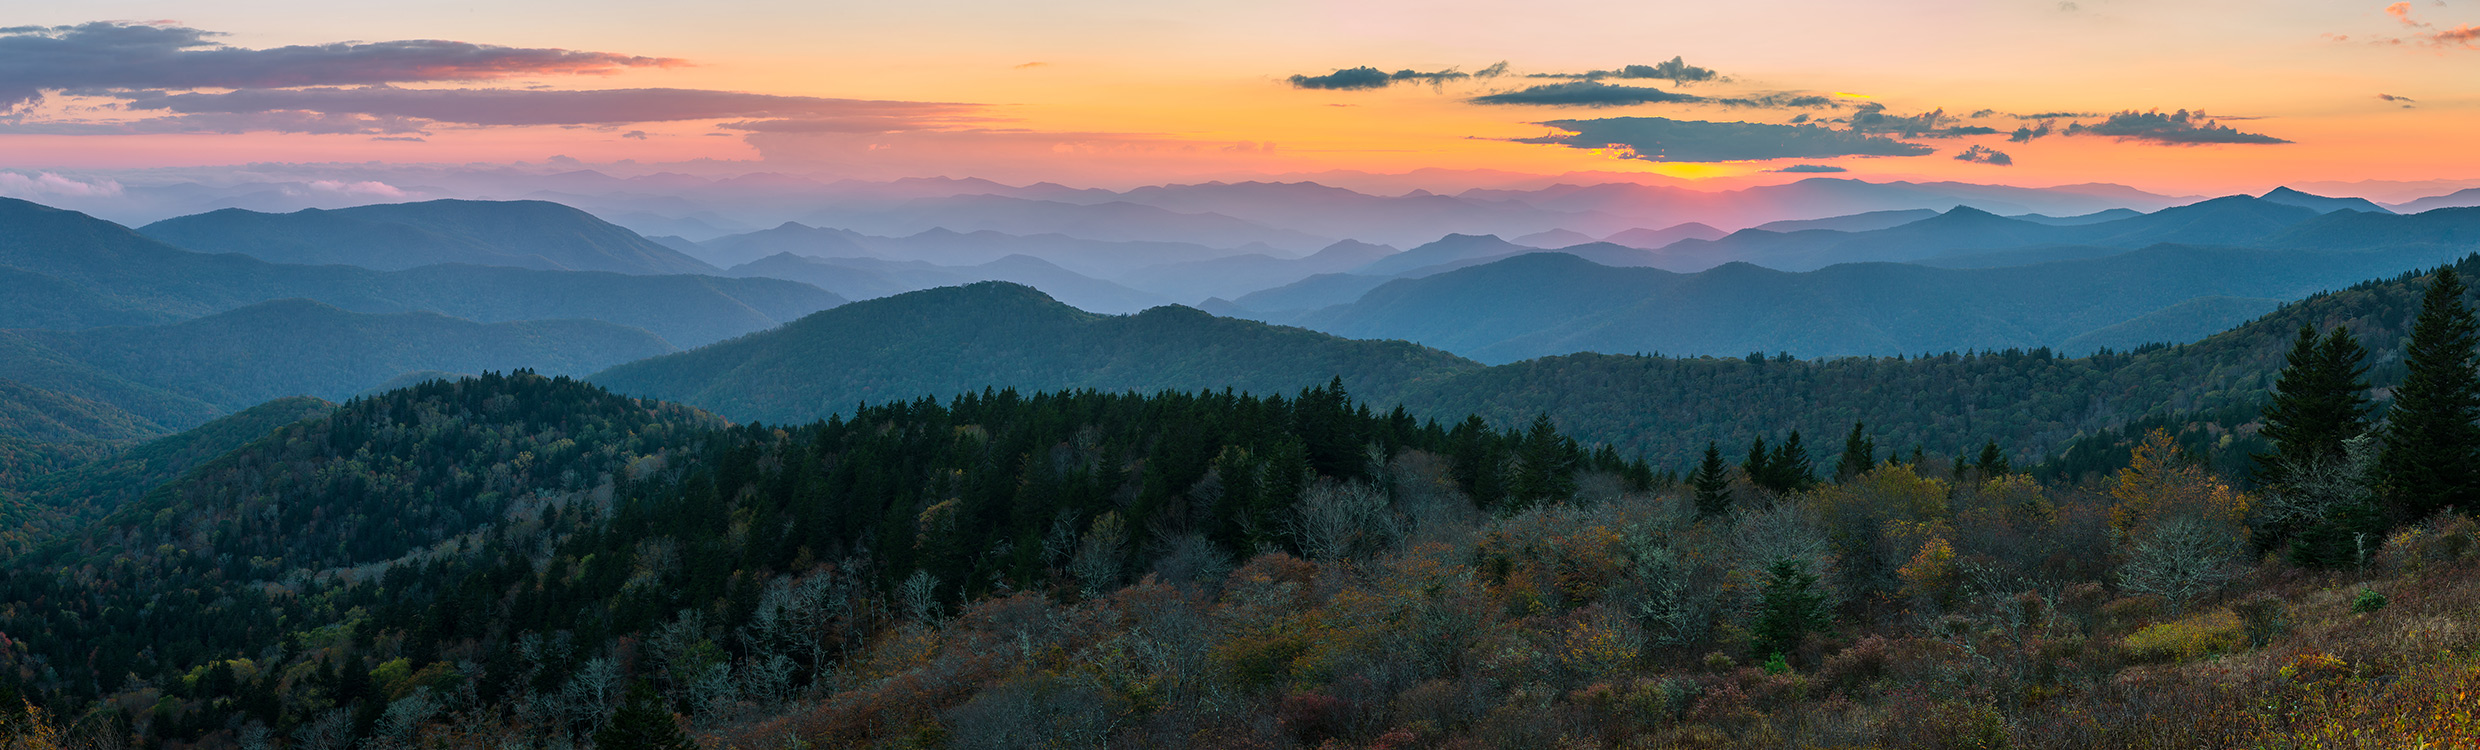 North Carolina sunset